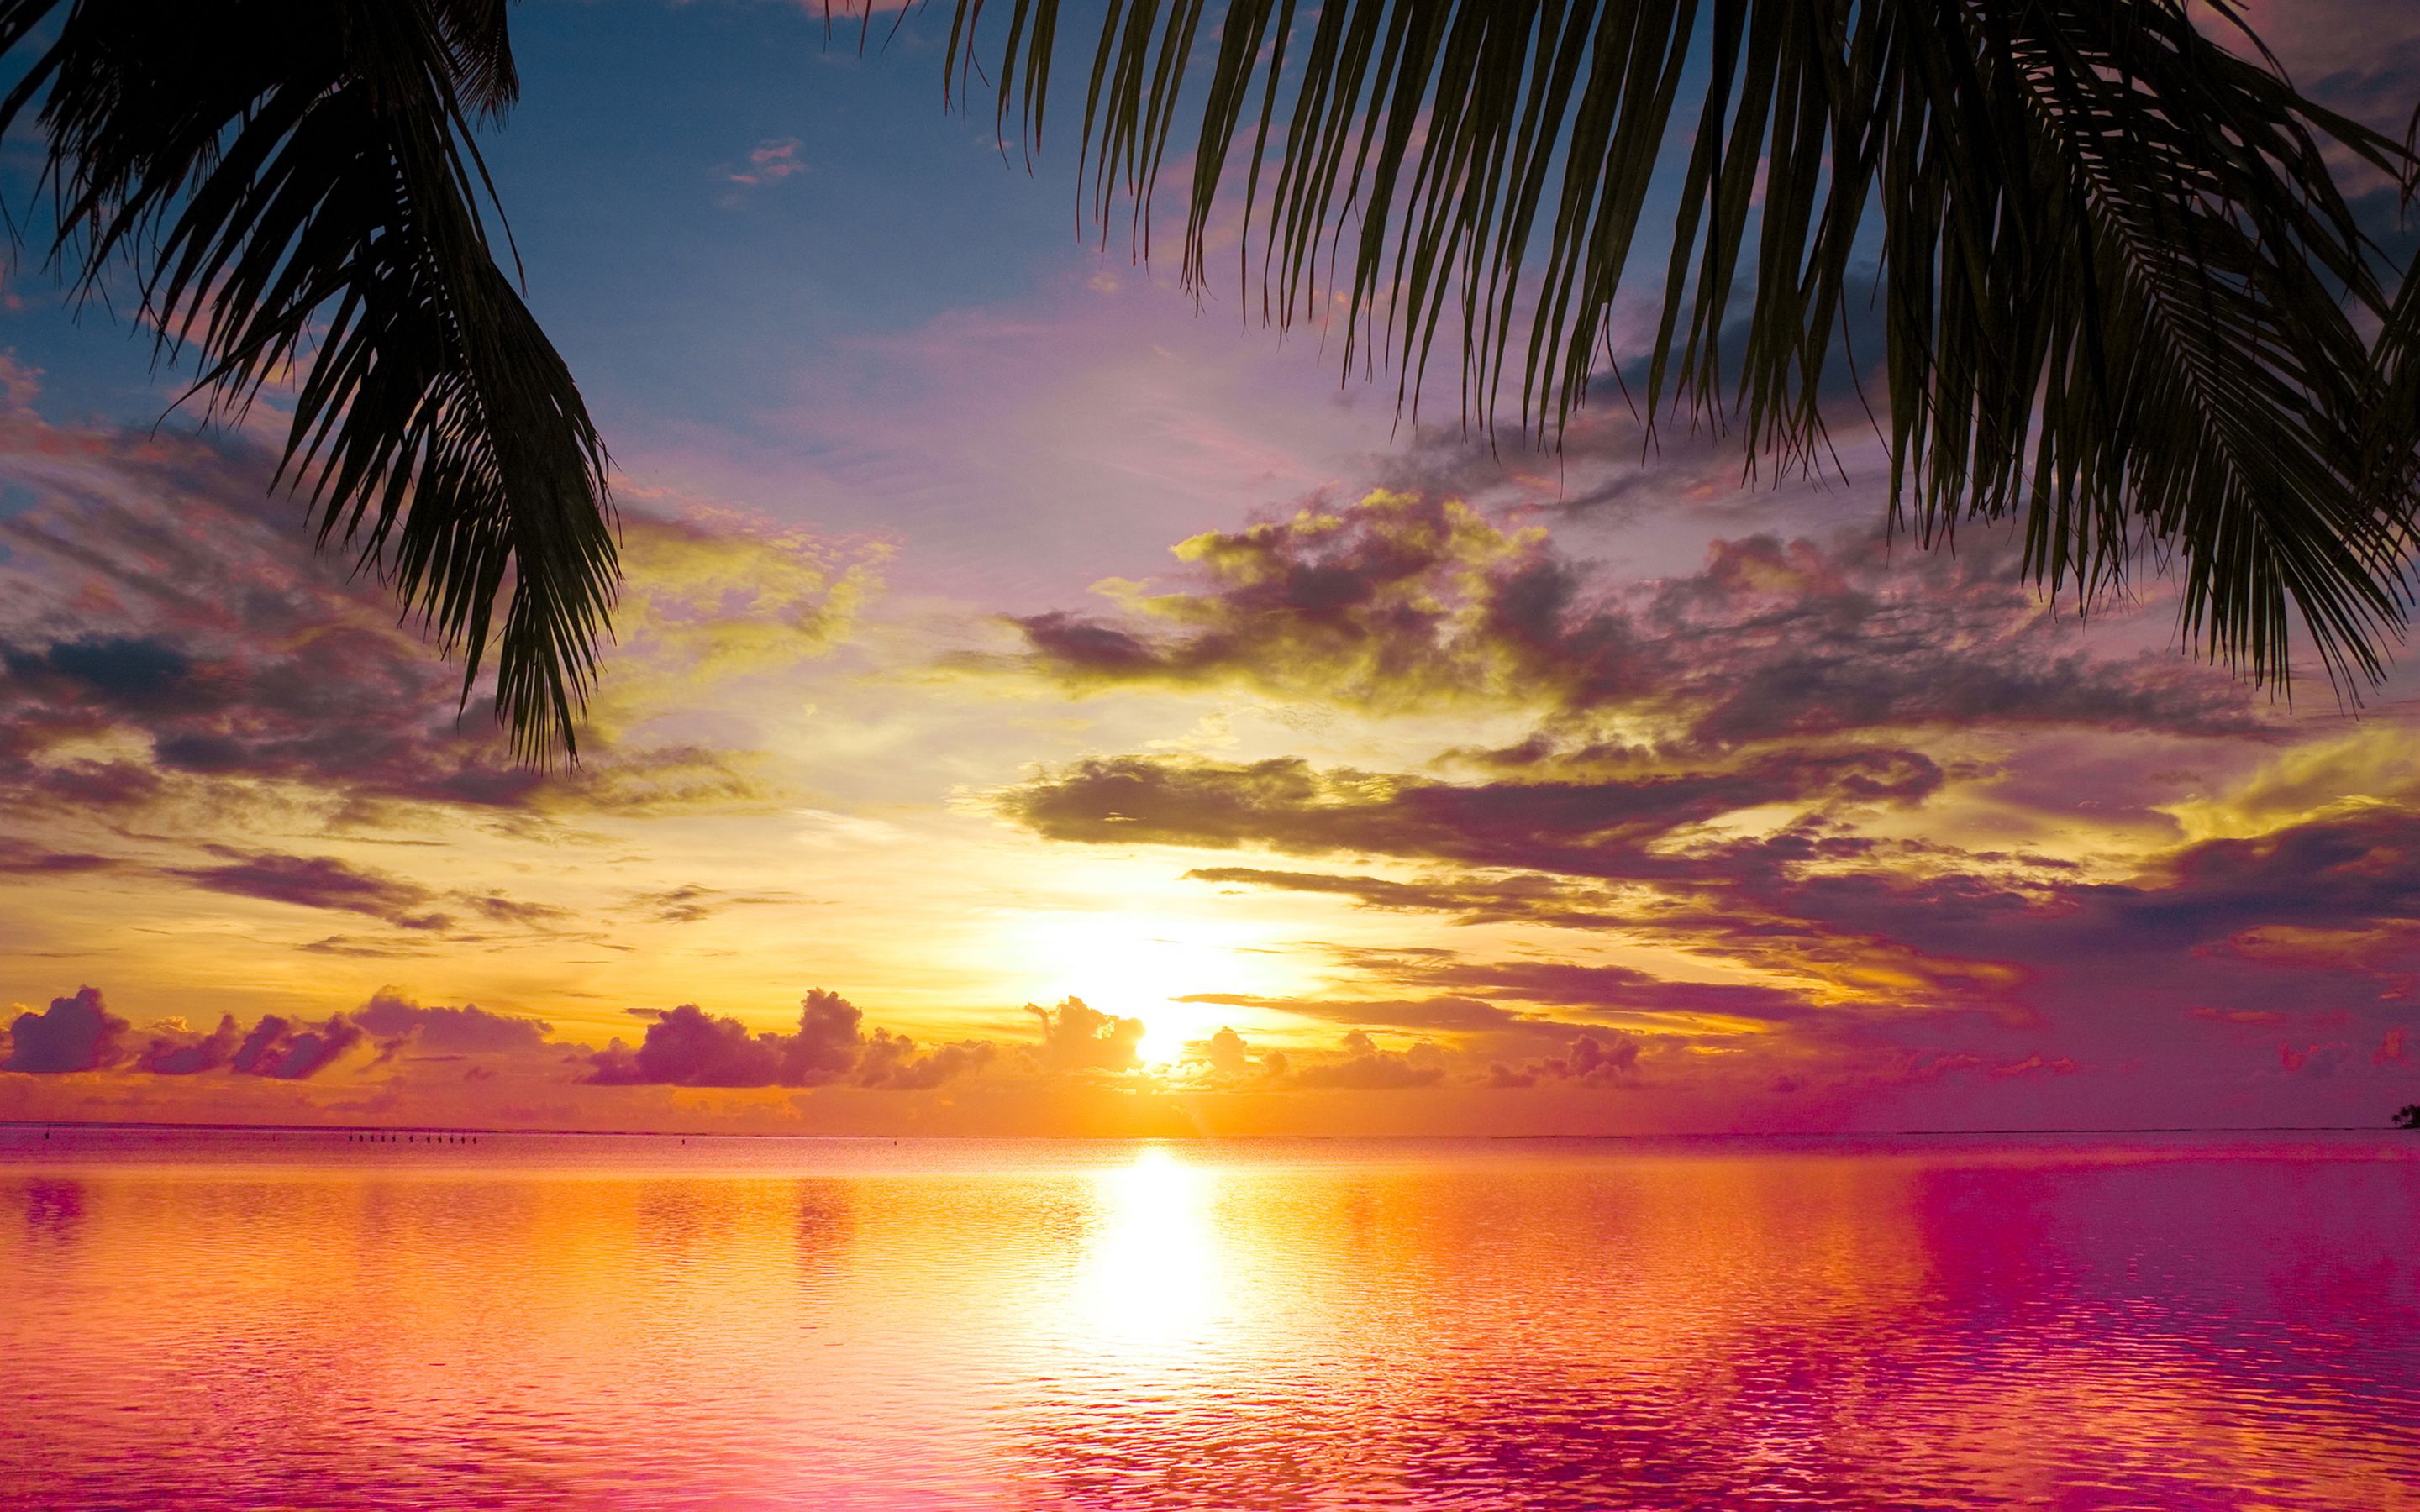 Caribbean Beach Sunset Wallpapers